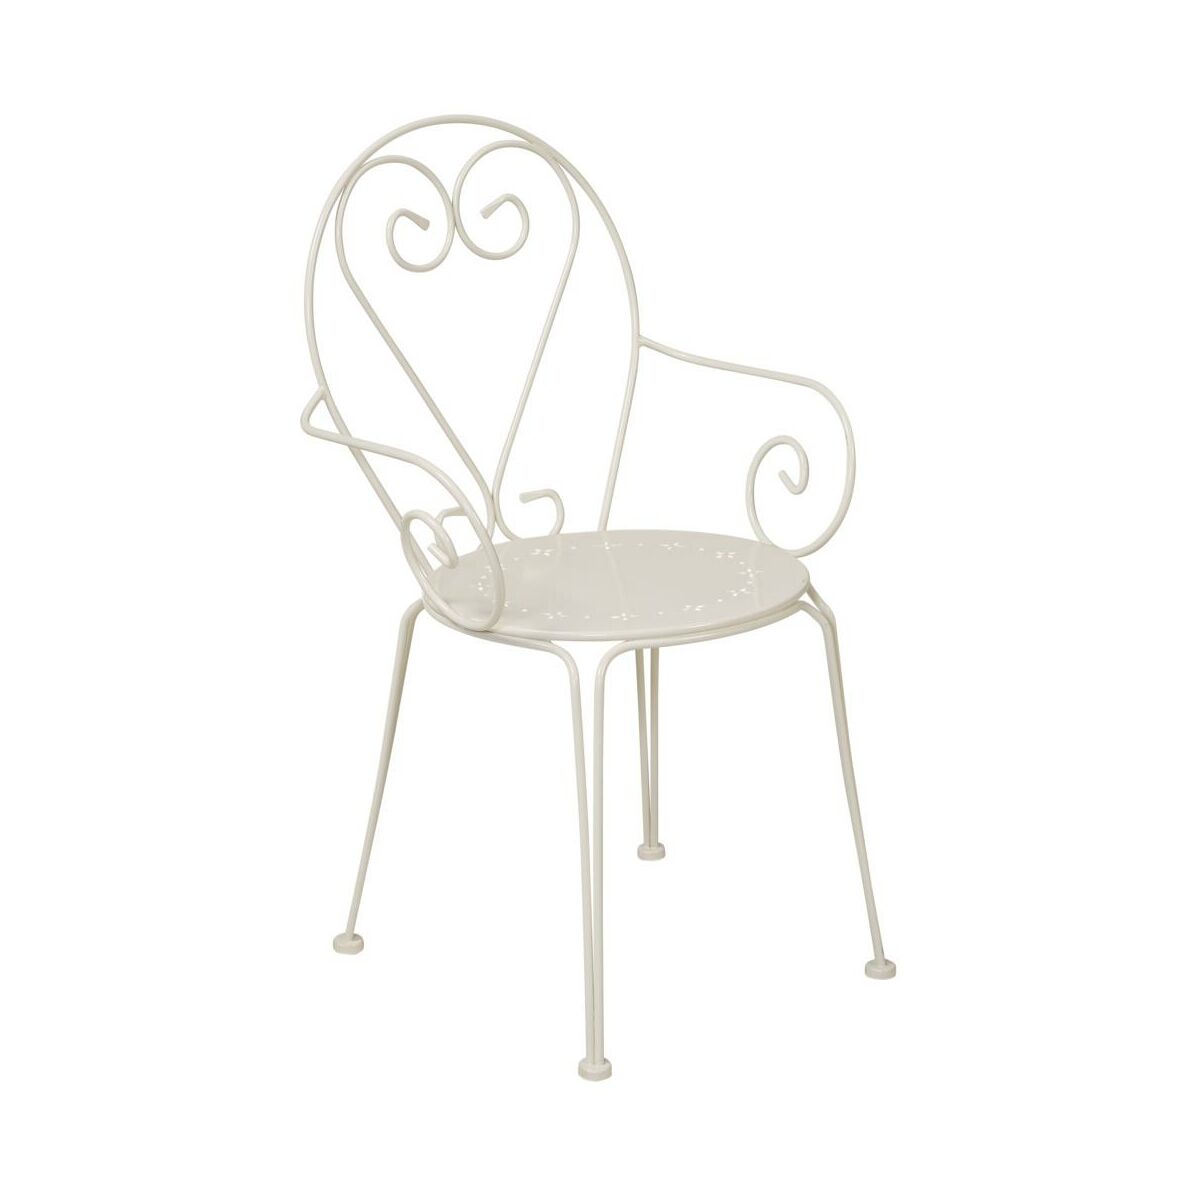 Krzeslo Ogrodowe Parma Stalowe Kremowe Krzesla Fotele Lawki Ogrodowe W Atrakcyjnej Cenie W Sklepach Leroy Merlin